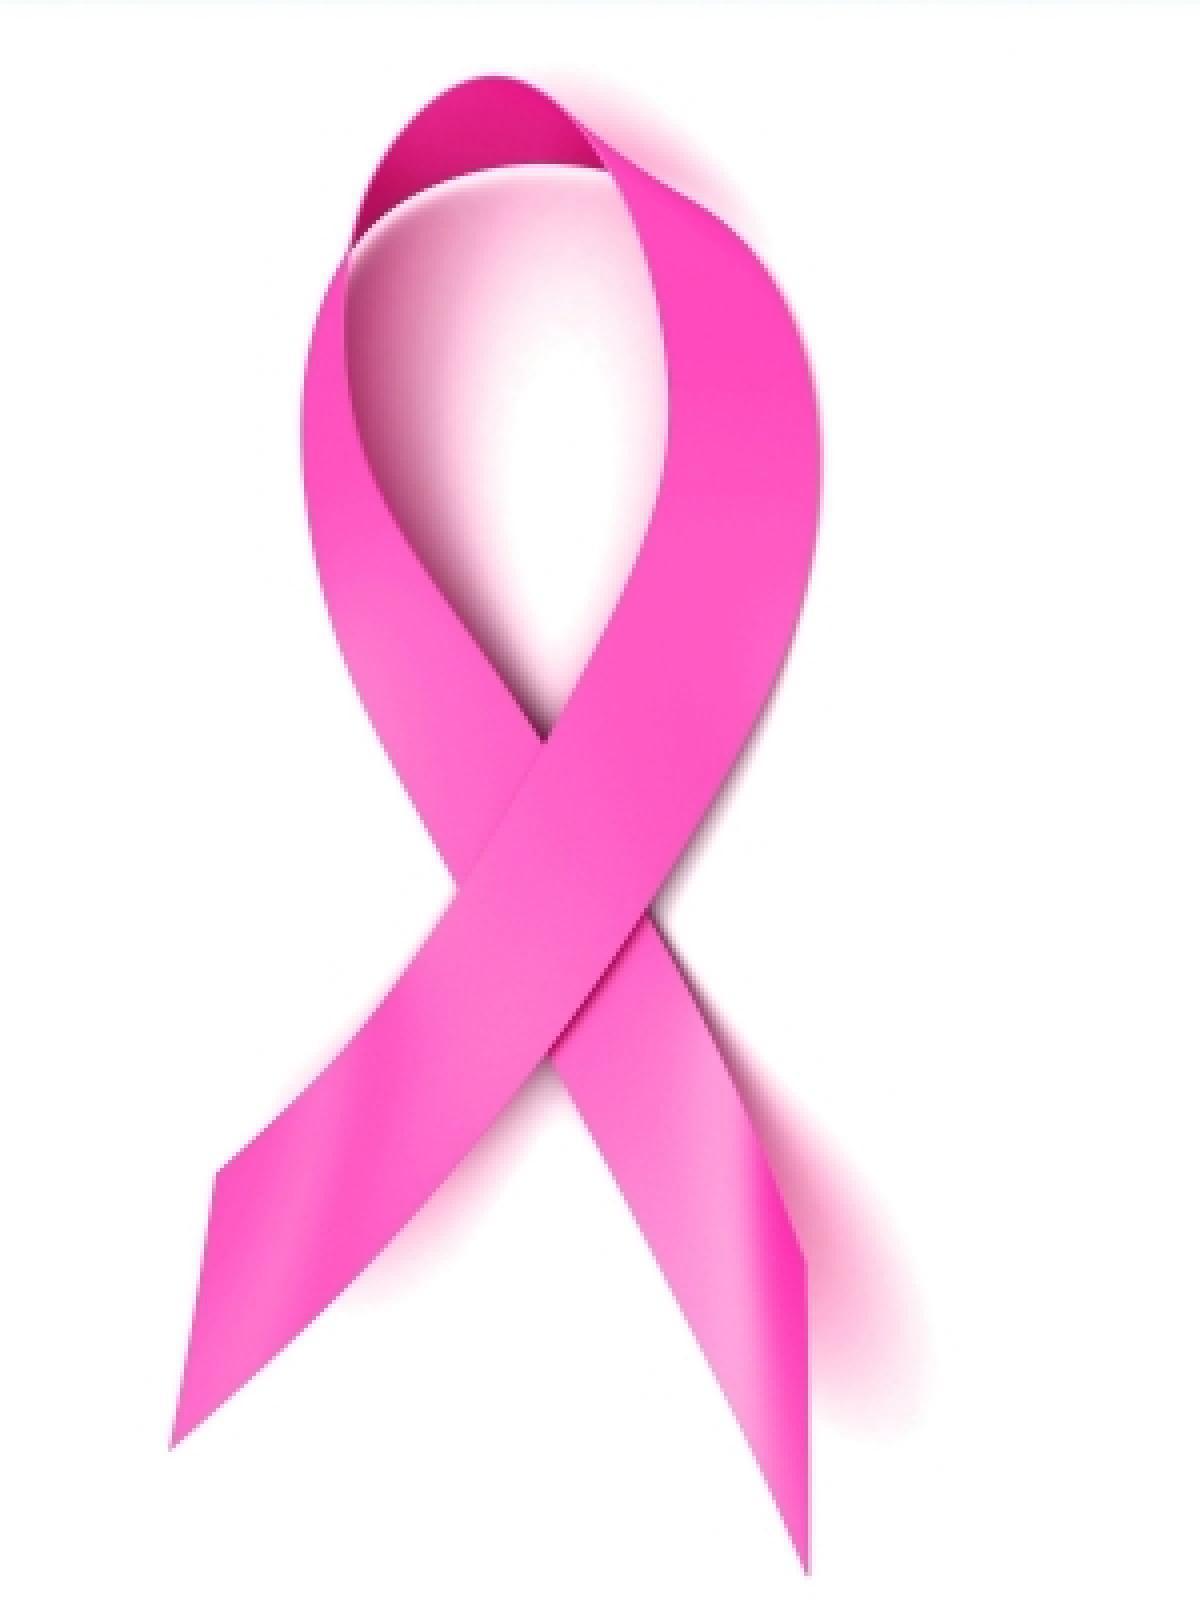 19 de octubre, Día contra el cáncer de mama